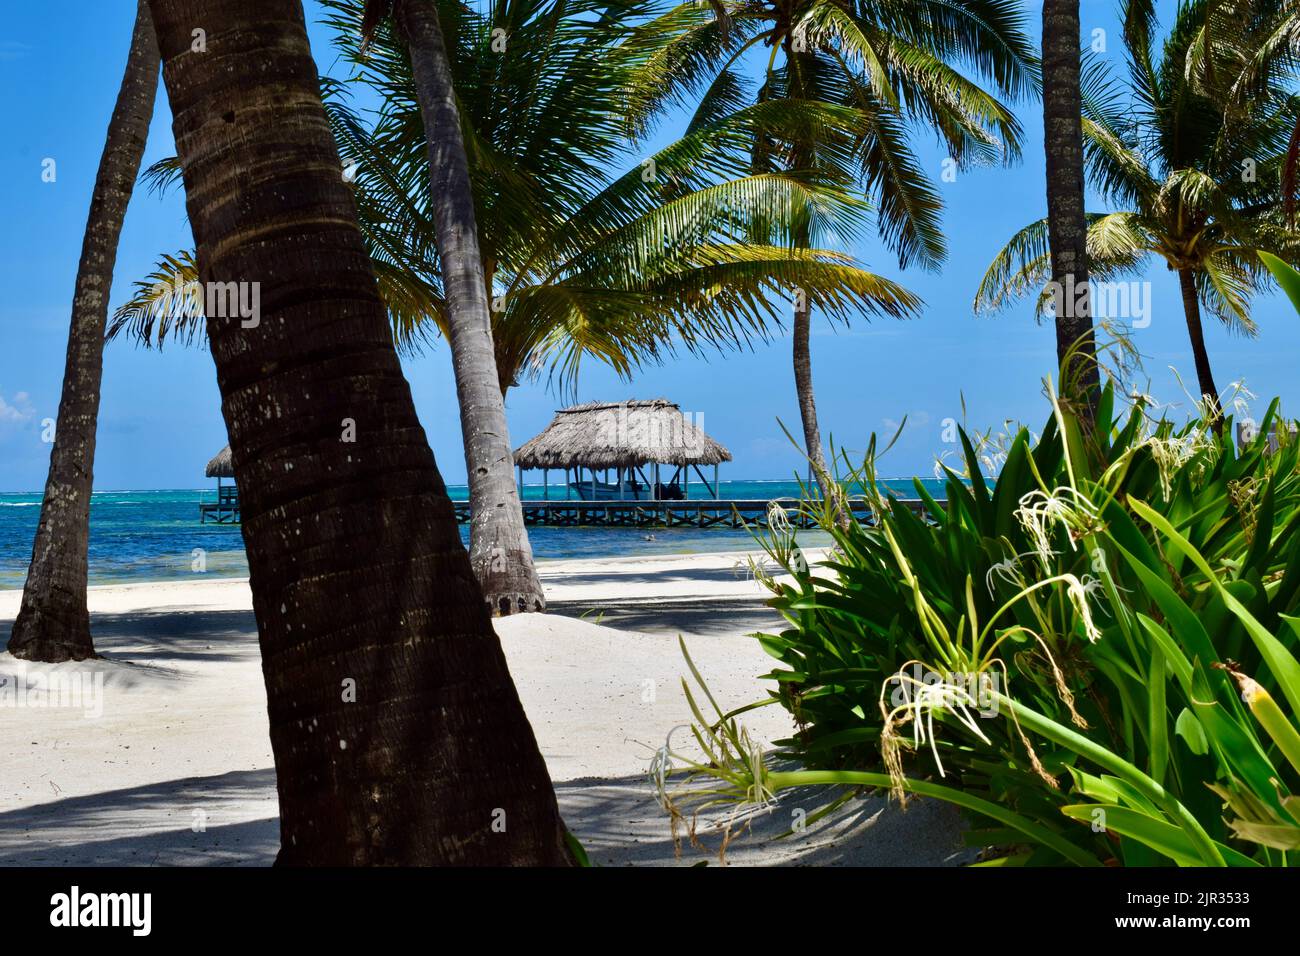 Una scena tropicale su Ambergris Caye, San Pedro, Belize, di un palapa, molo, palme e spiaggia di sabbia bianca in una giornata limpida e soleggiata. Foto Stock